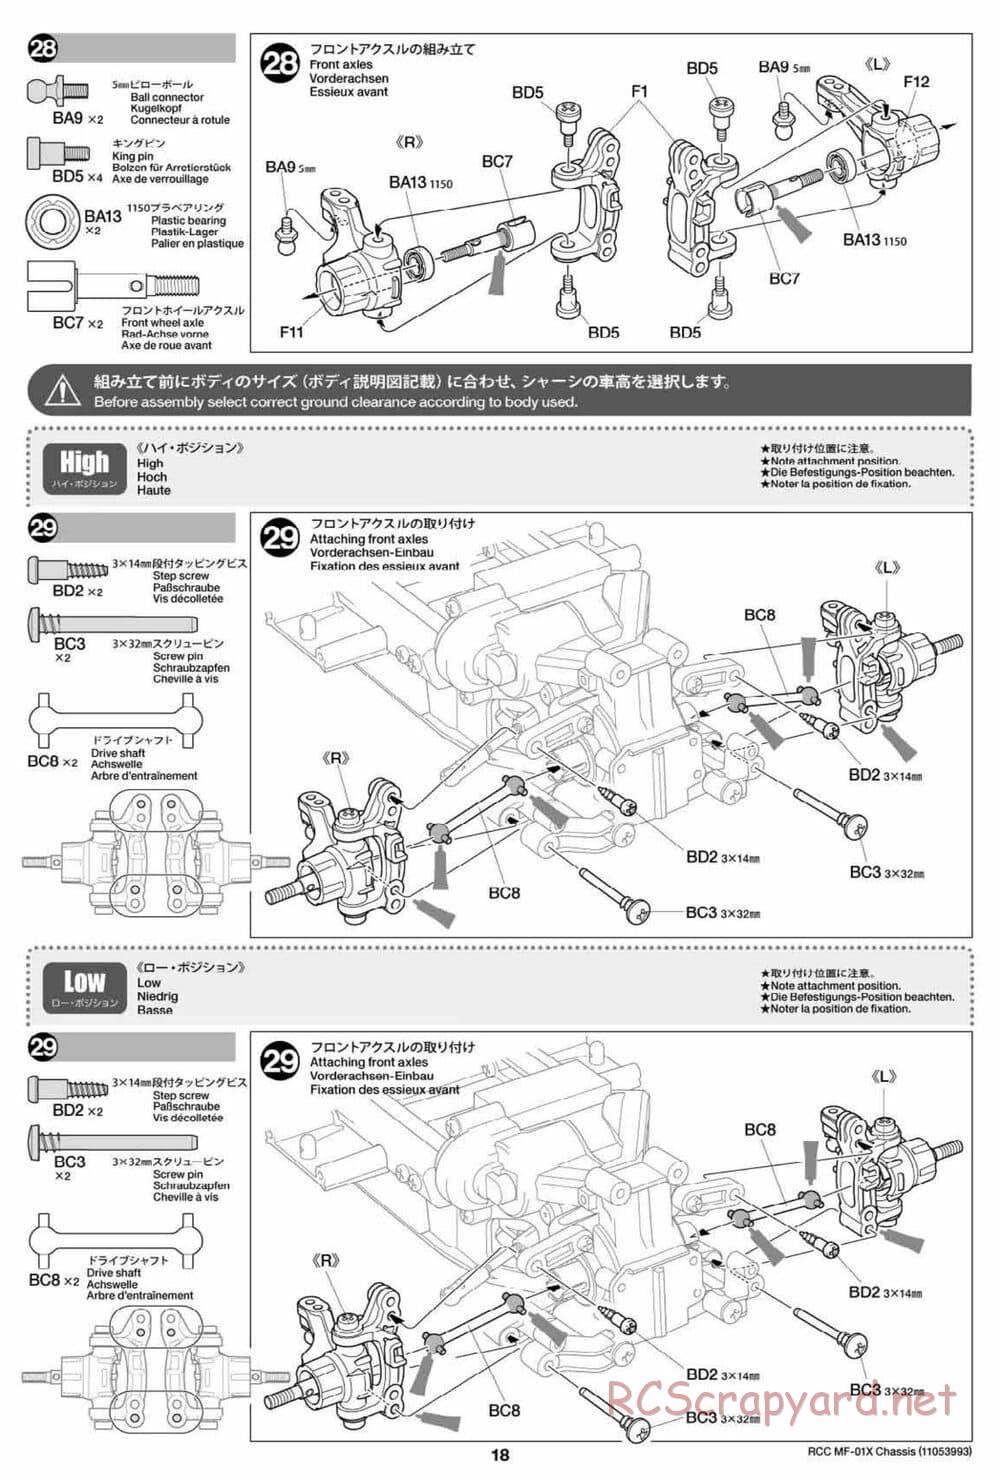 Tamiya - MF-01X Chassis - Manual - Page 18